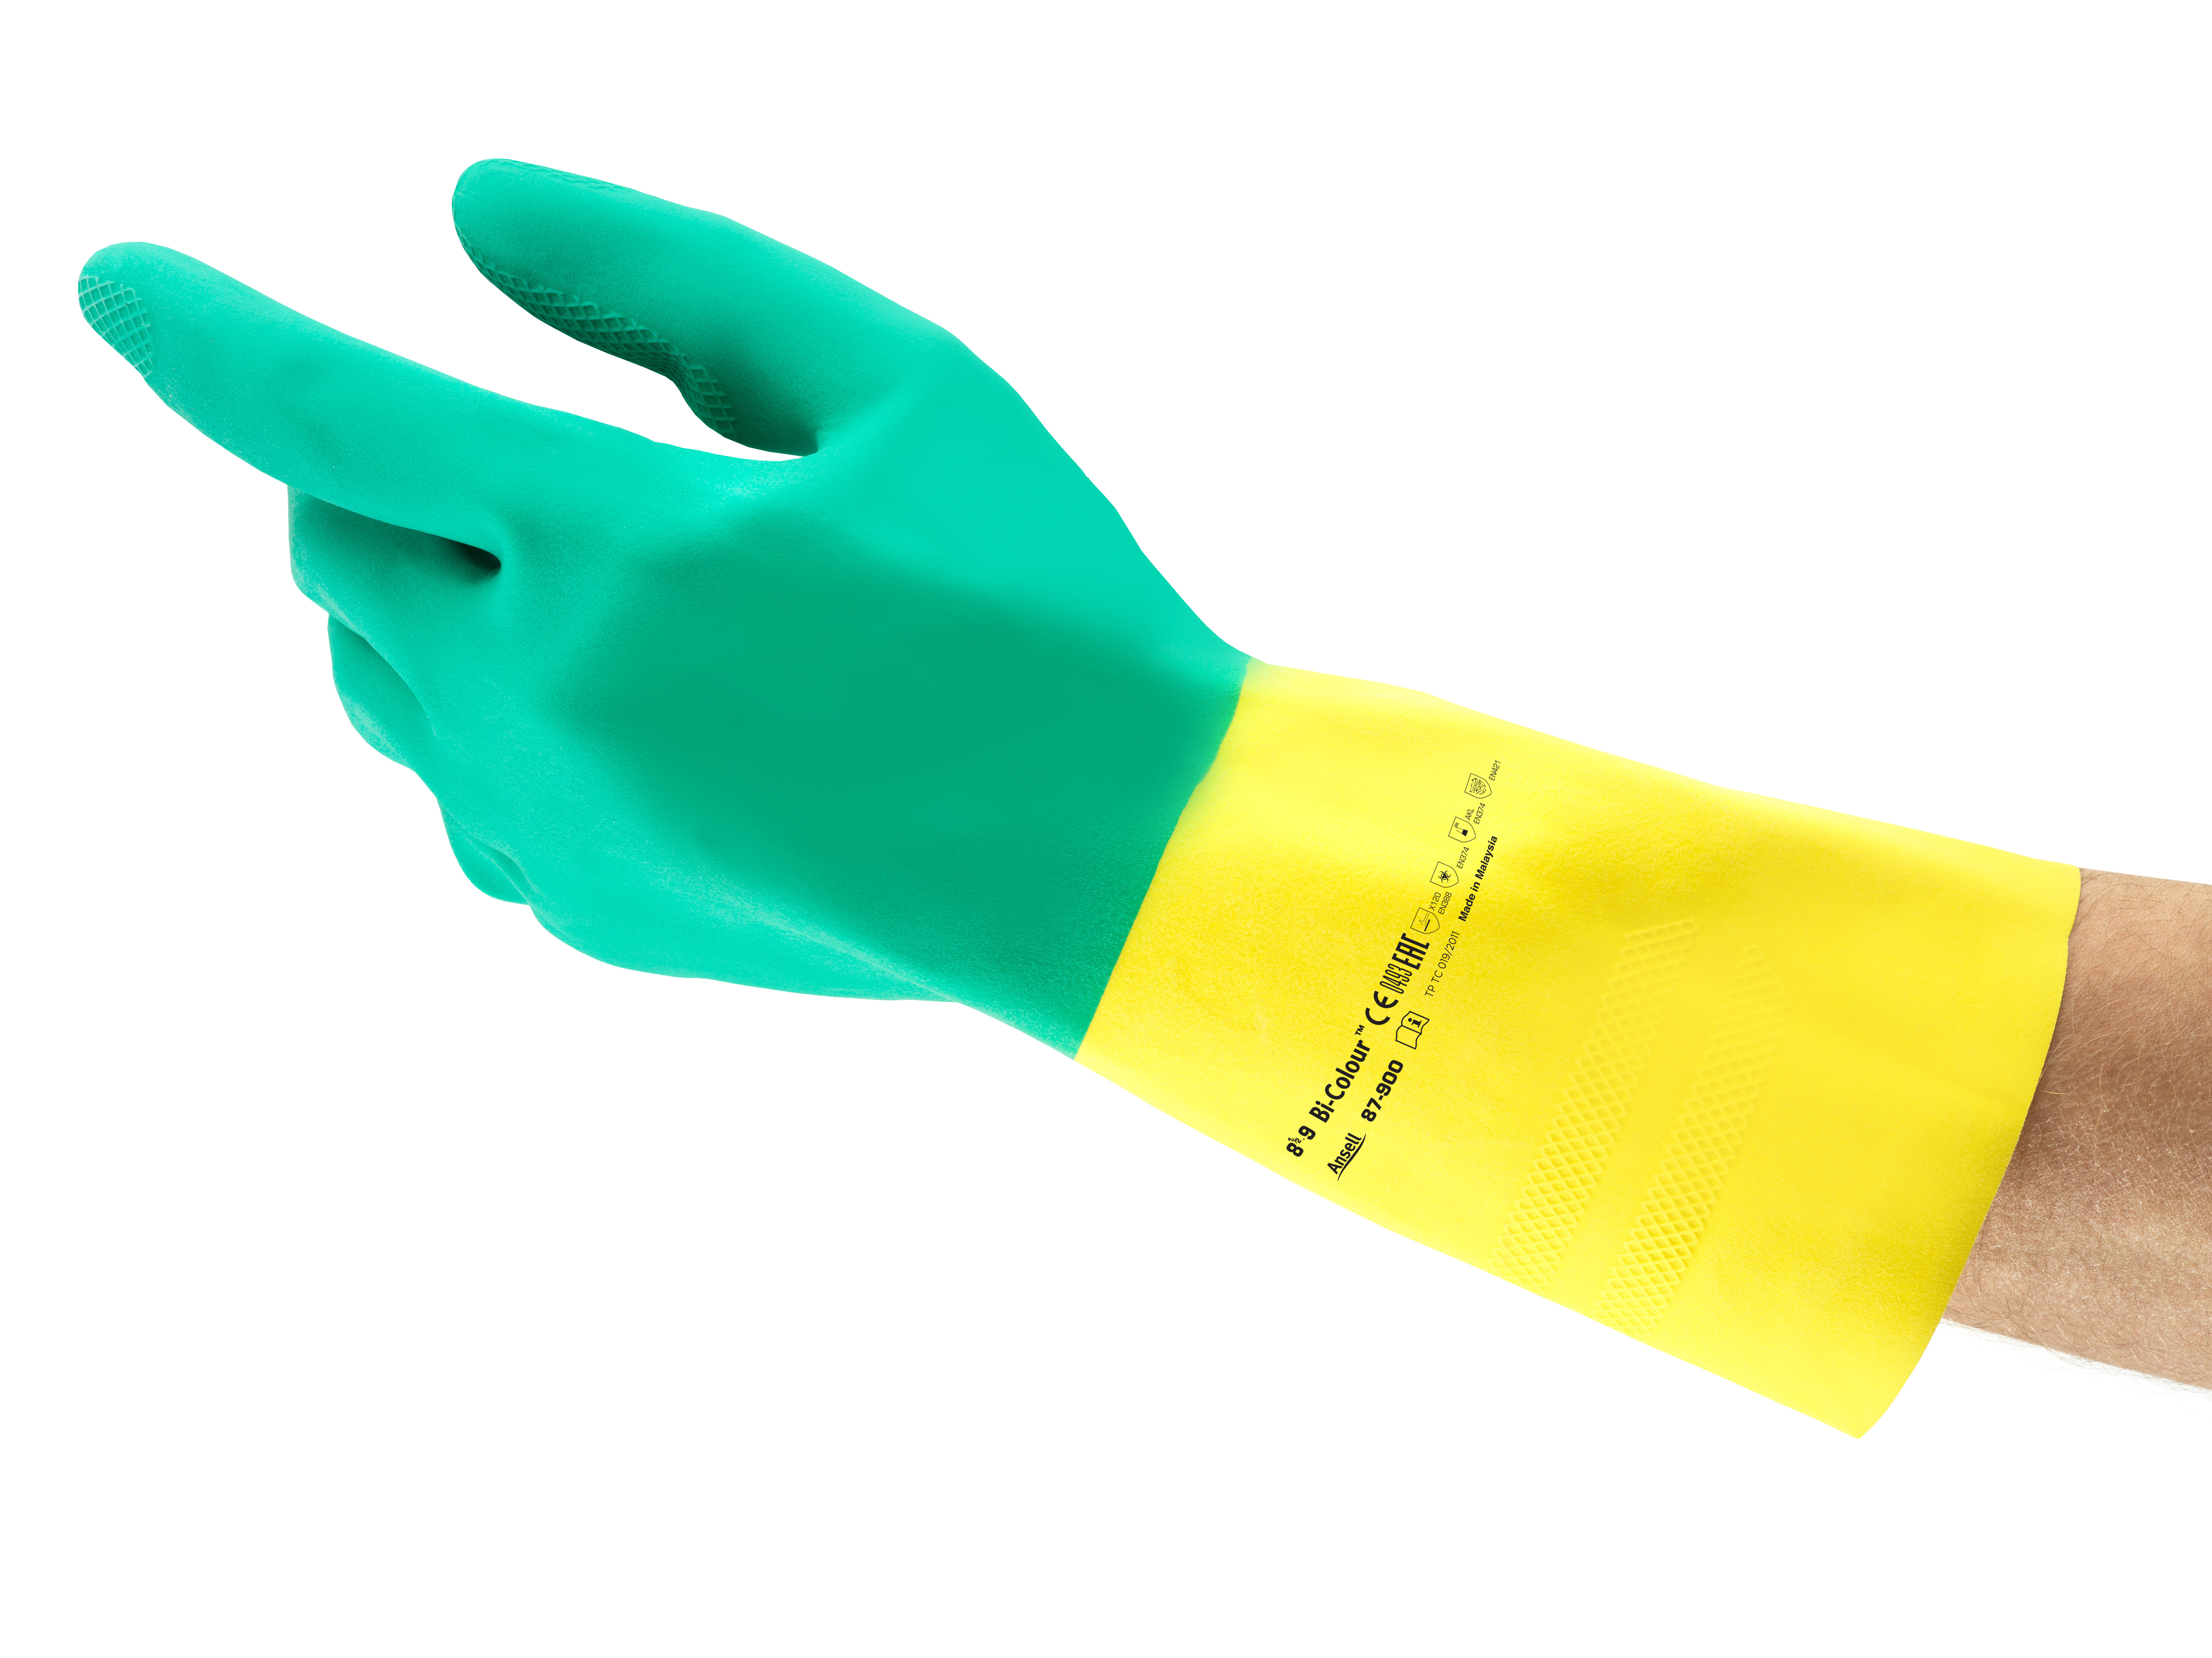 Ansell - Handschuh AlphaTec 87-900 Chemikalienschutzhandschuh (Bi-Colour)